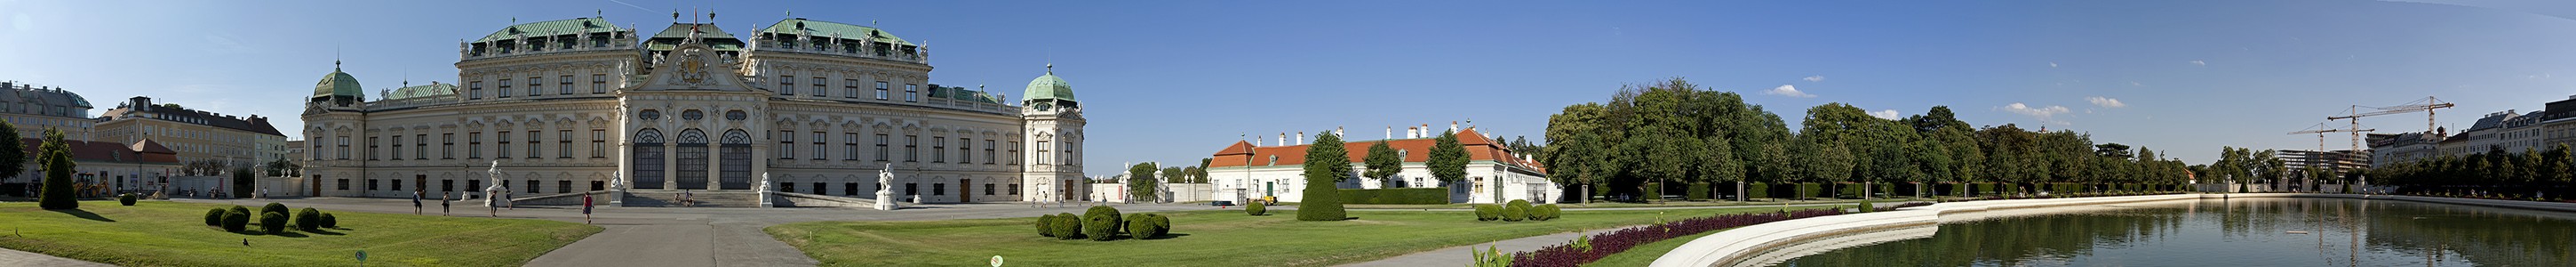 Schlossanlage Belvedere: Oberes Belvedere, Belvederegarten Wien